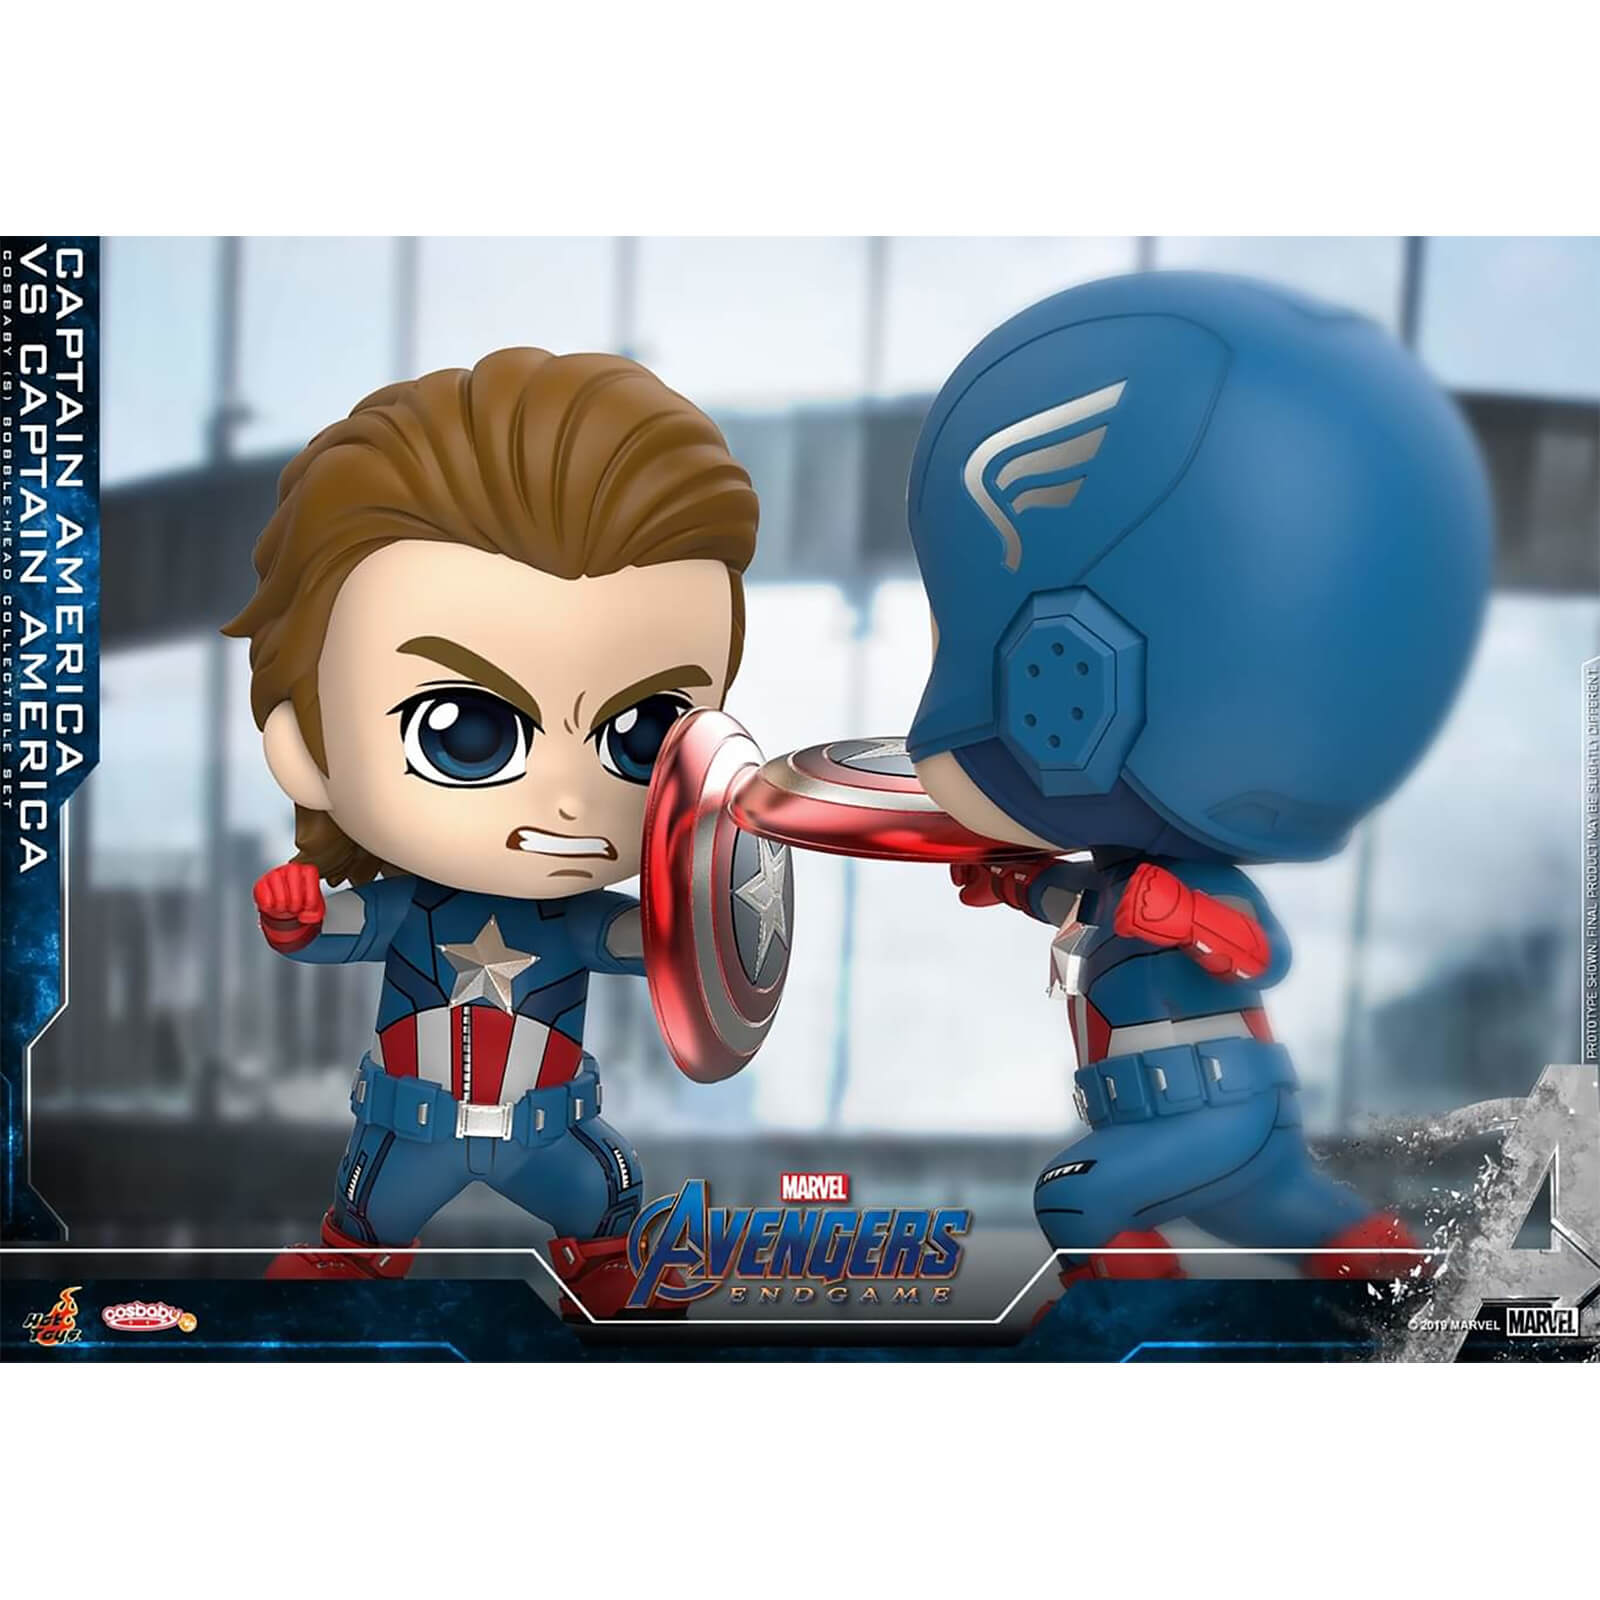 Hot Toys Cosbaby Marvel Avengers: Endgame - Captain America VS Captain America (Set of 2) Figure